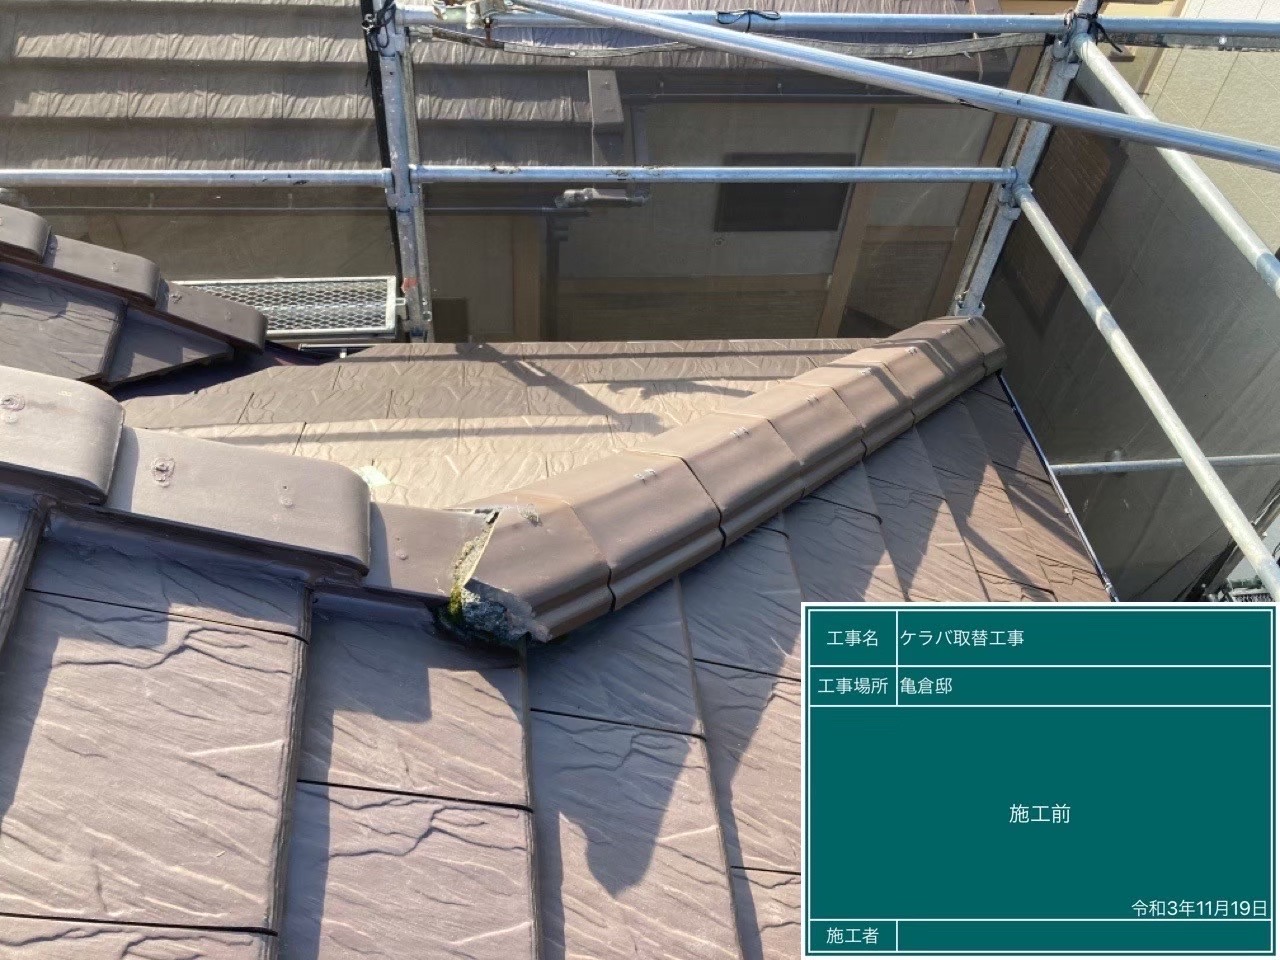 さいたま市大宮区にて屋根修理〈部分的に葺き直し工事〉の施工前写真